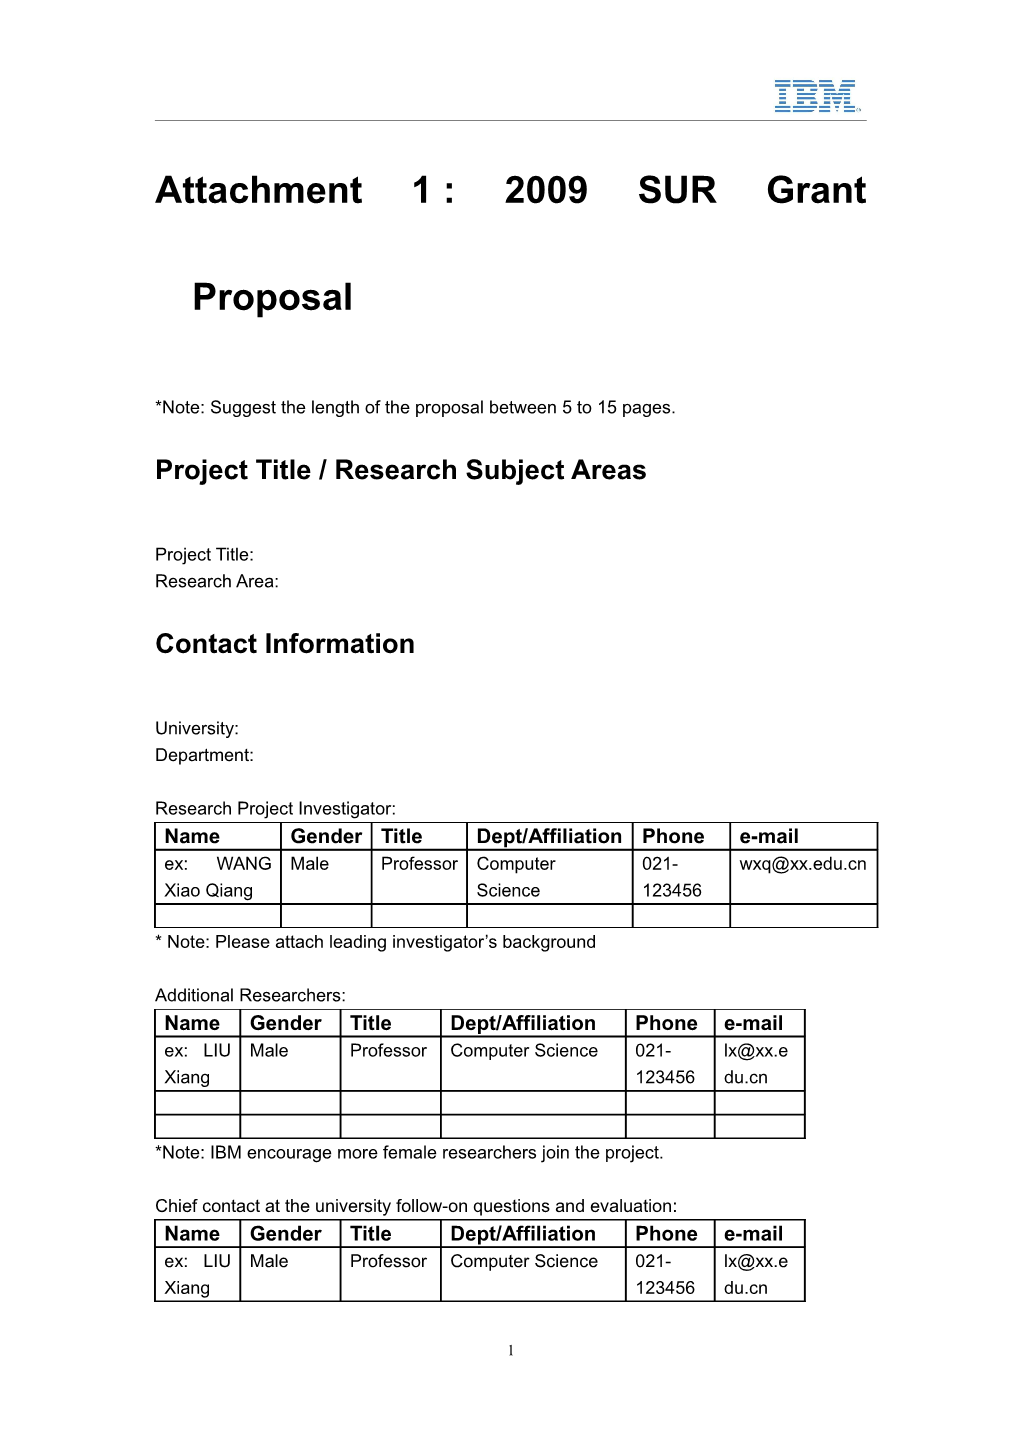 Attachment 1: 2009 SUR Grant Proposal